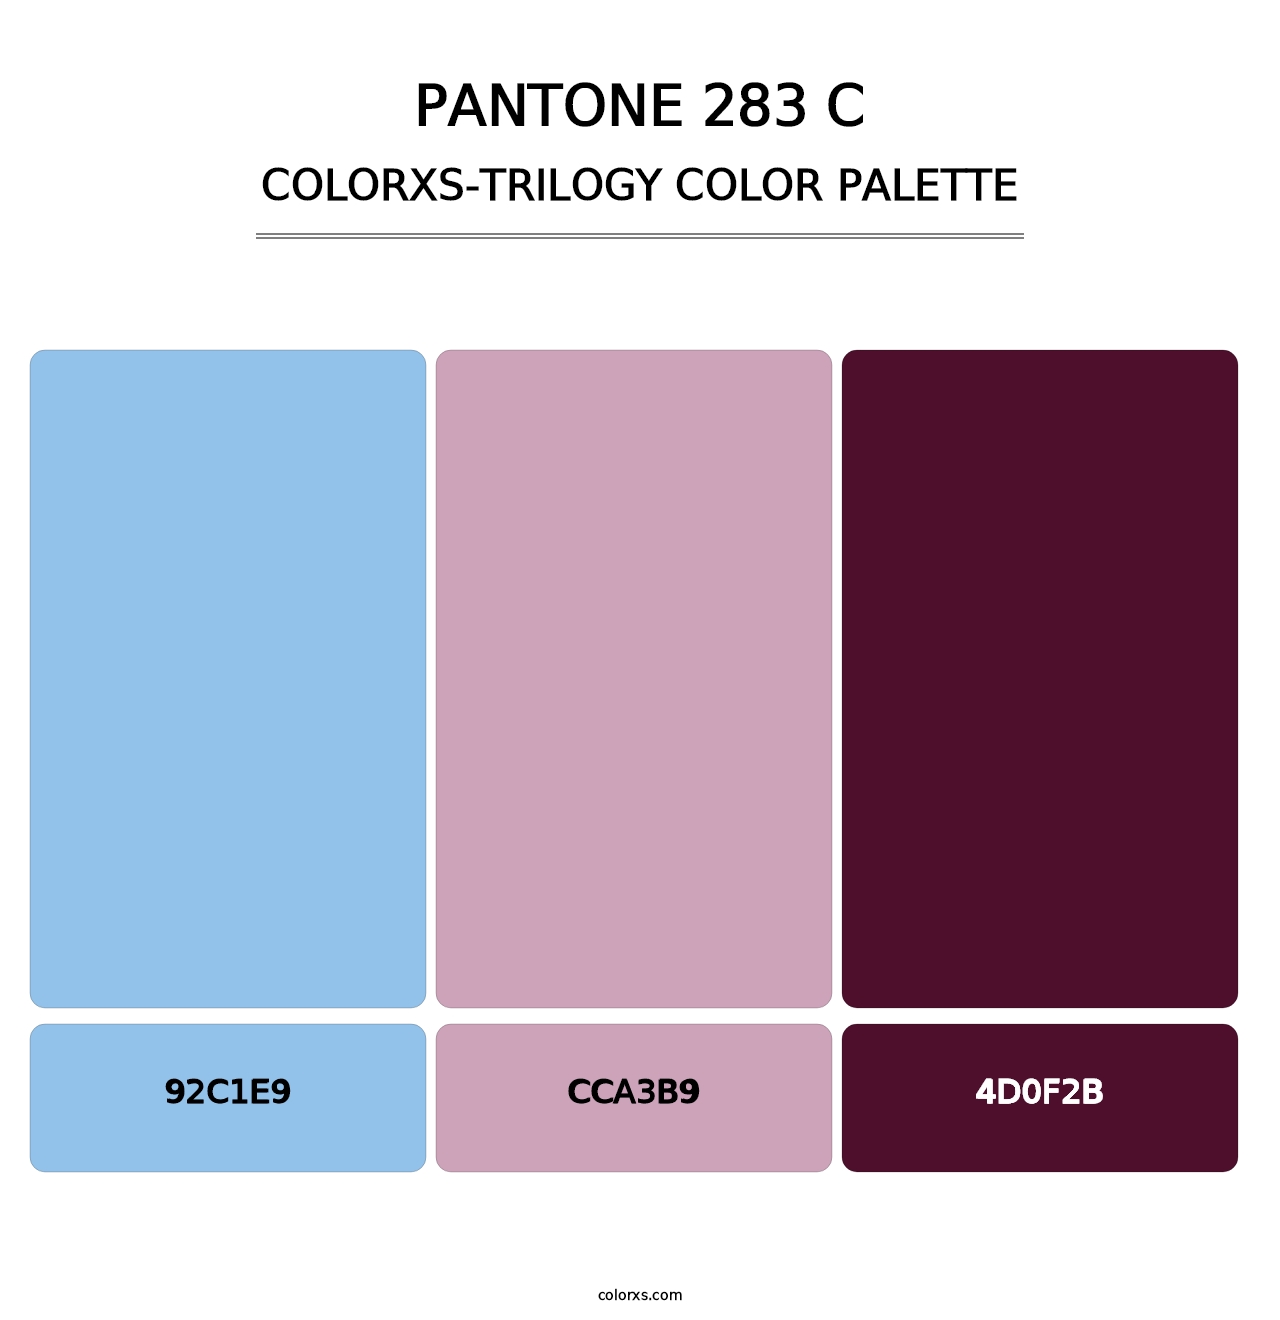 PANTONE 283 C - Colorxs Trilogy Palette